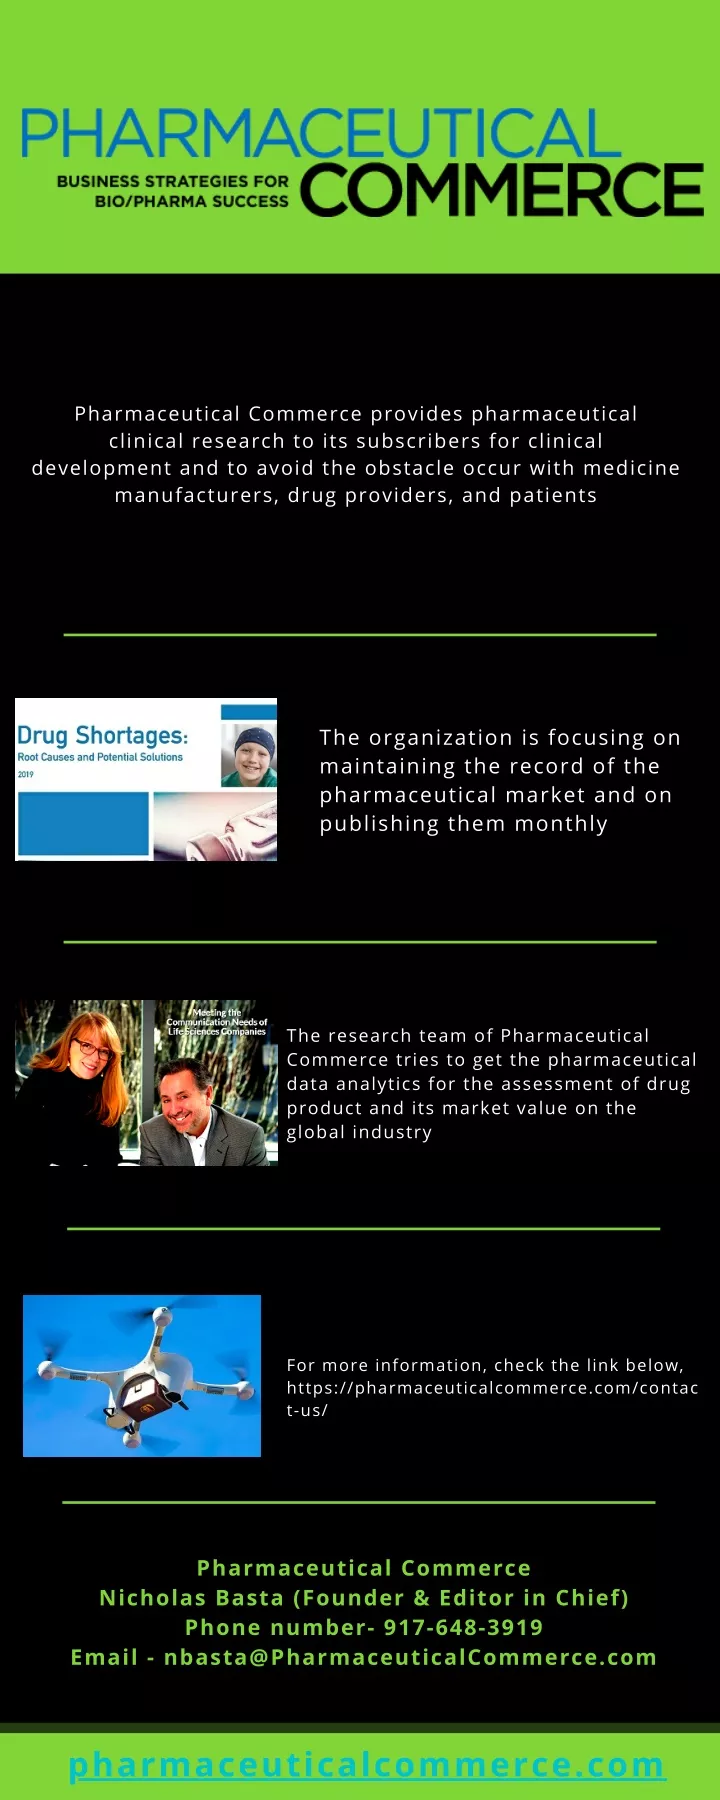 pharmaceutical commerce provides pharmaceutical